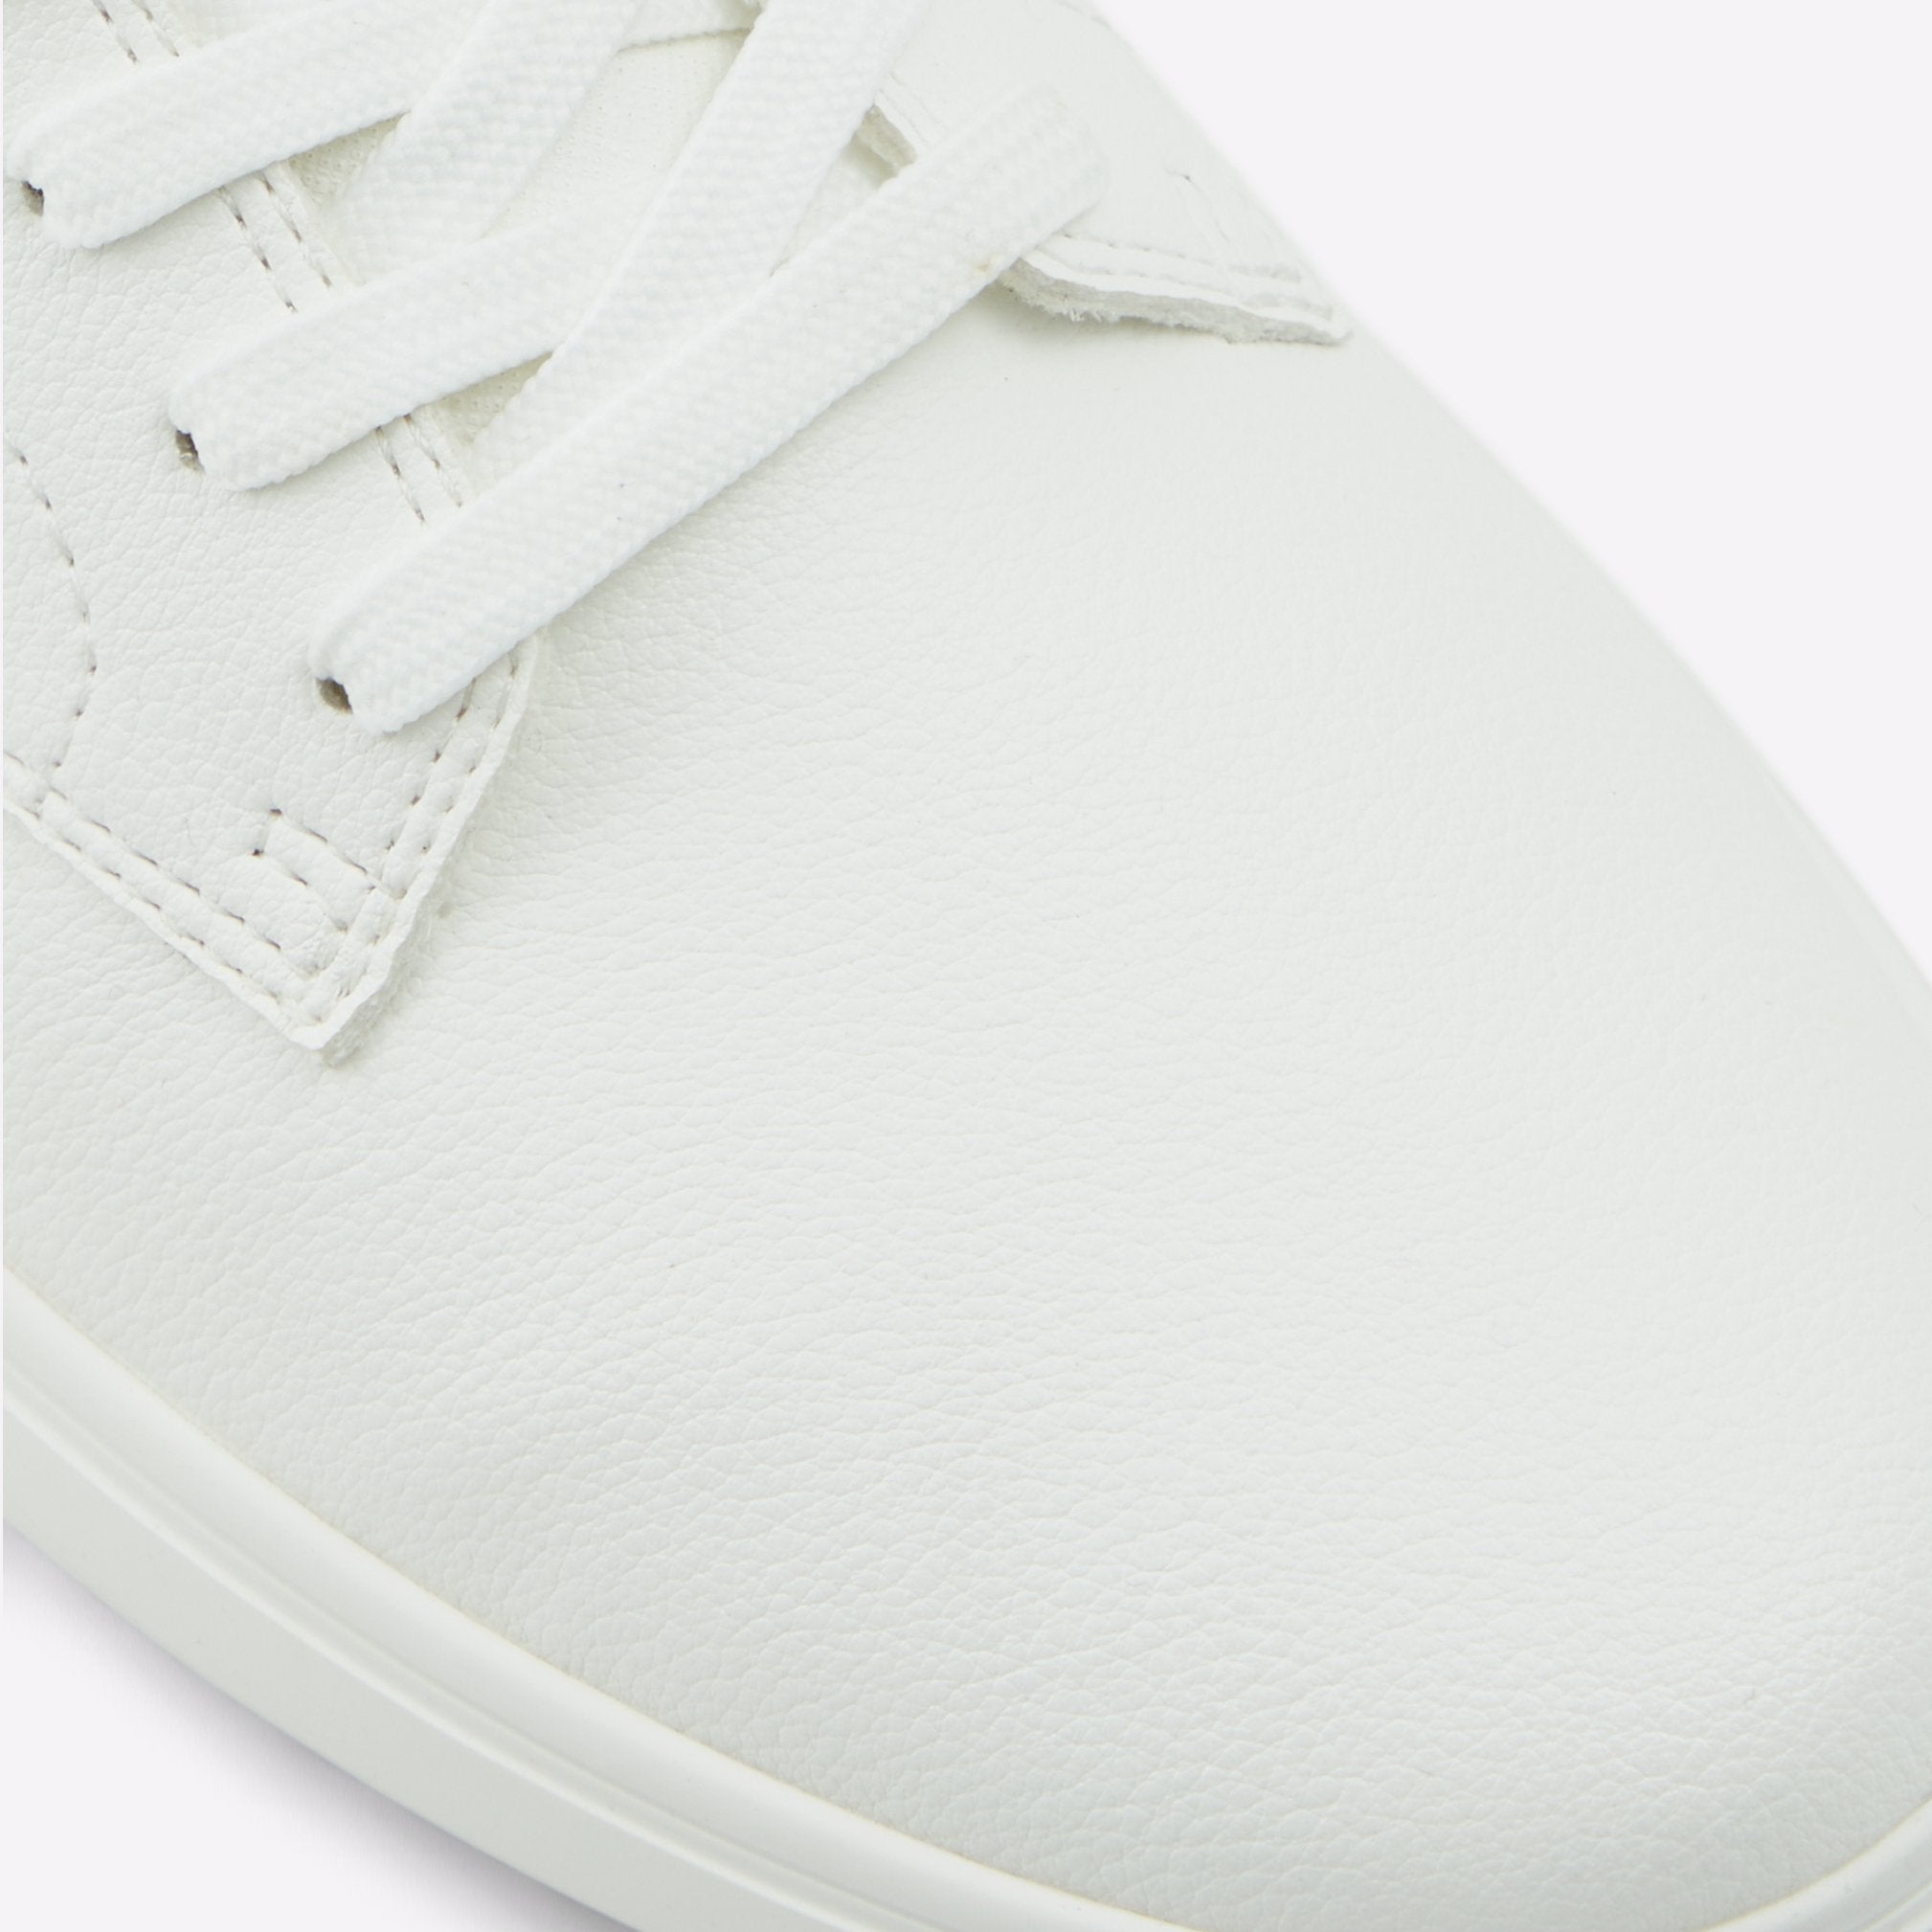 Aldo Men's Trainers Rigidus White – ALDO Shoes UK